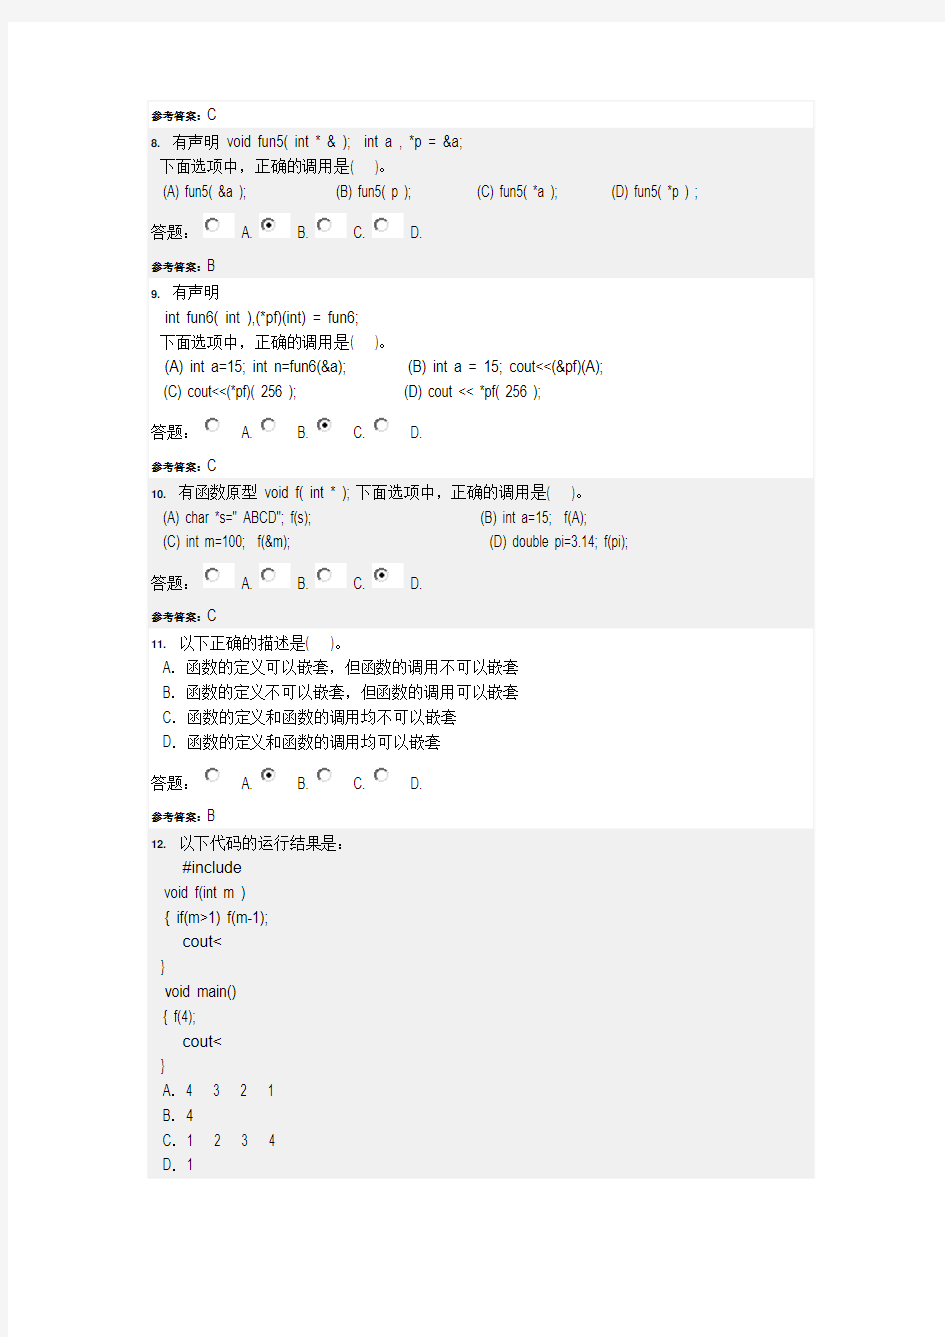 华南理工 高级语言程序设计C++ 第二次作业